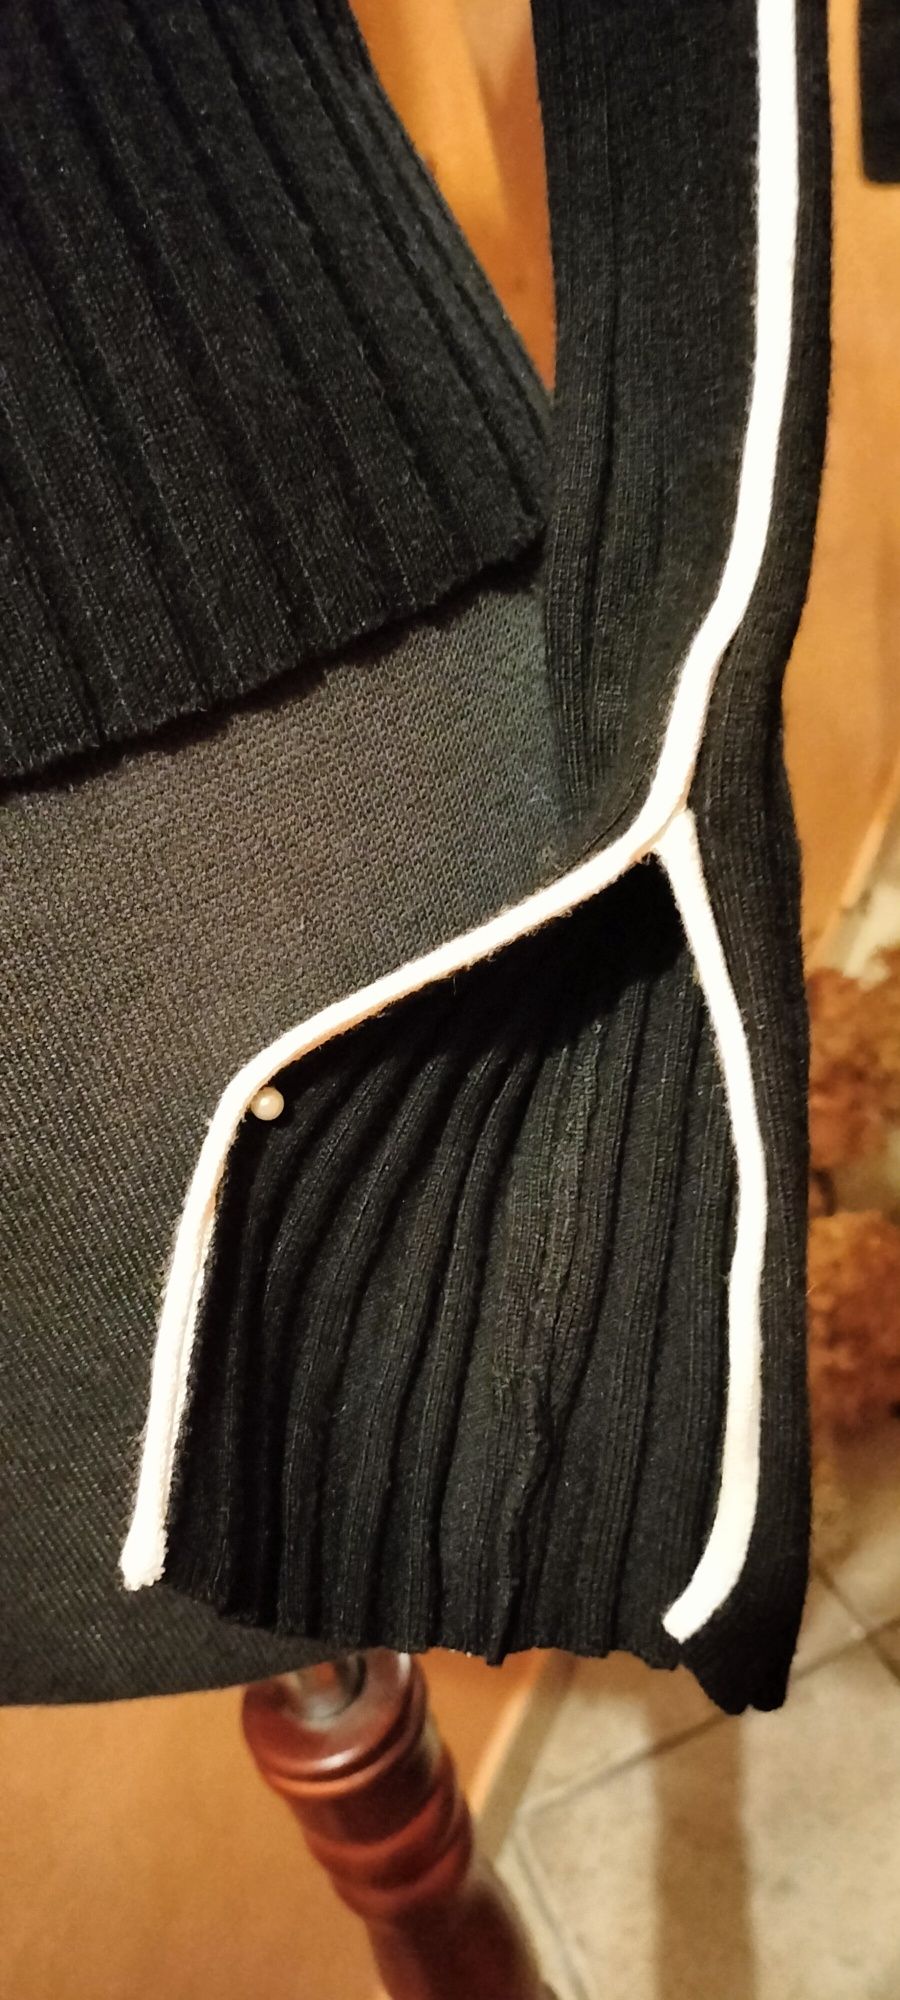 Wyjątkowy sweterek pulower sweter czarny taliowany okrągły d